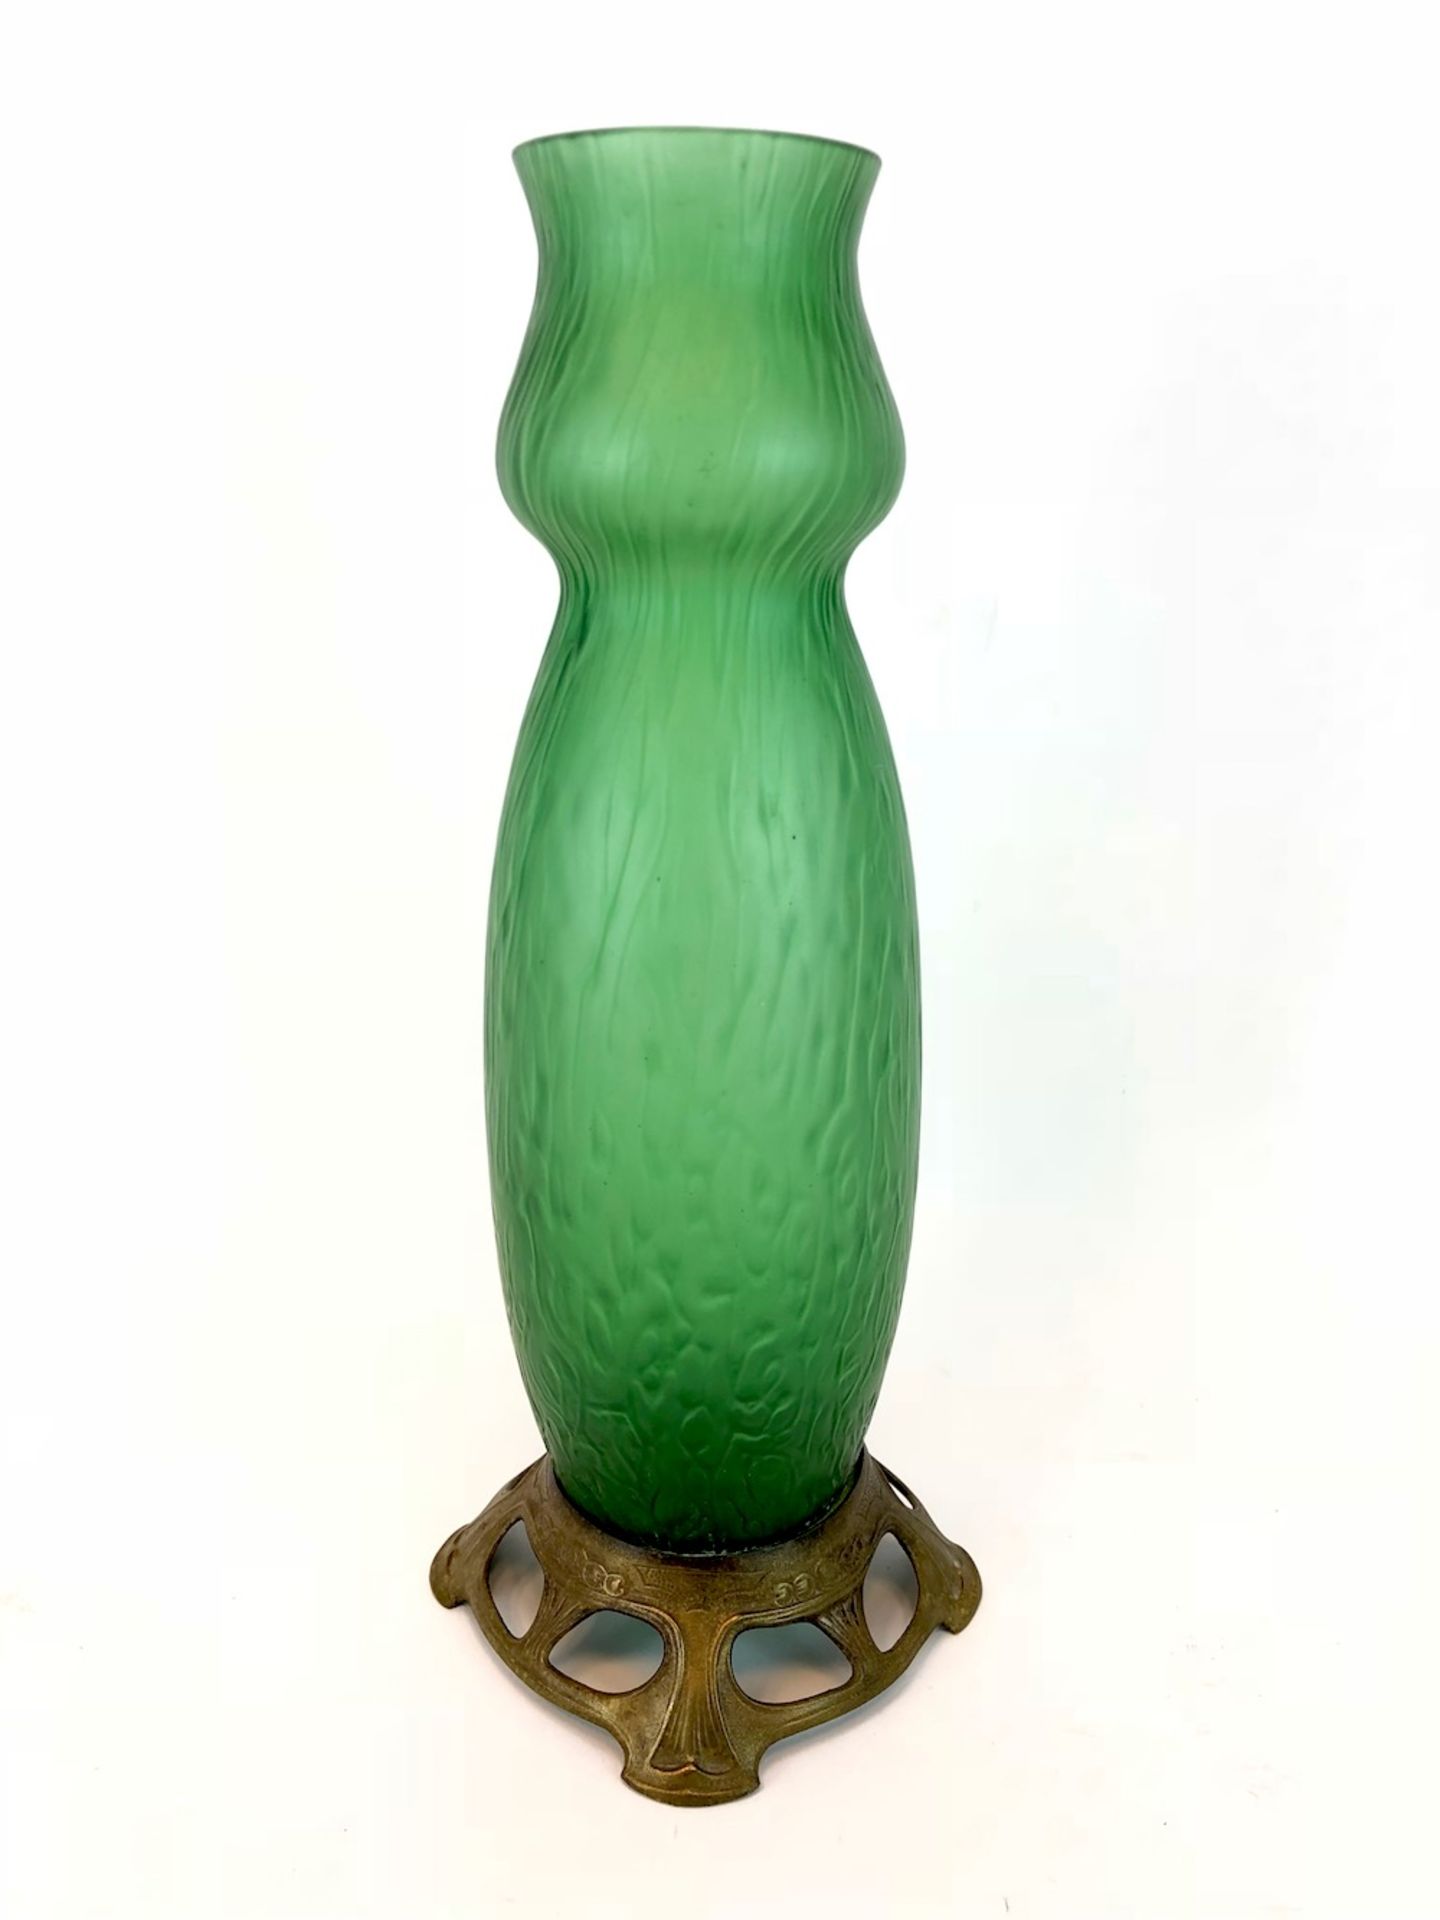 Formschöne Vase: Jugendstil Handarbeit.Grünes Glas aufwendig von Hand gearbeitet, hohe leicht